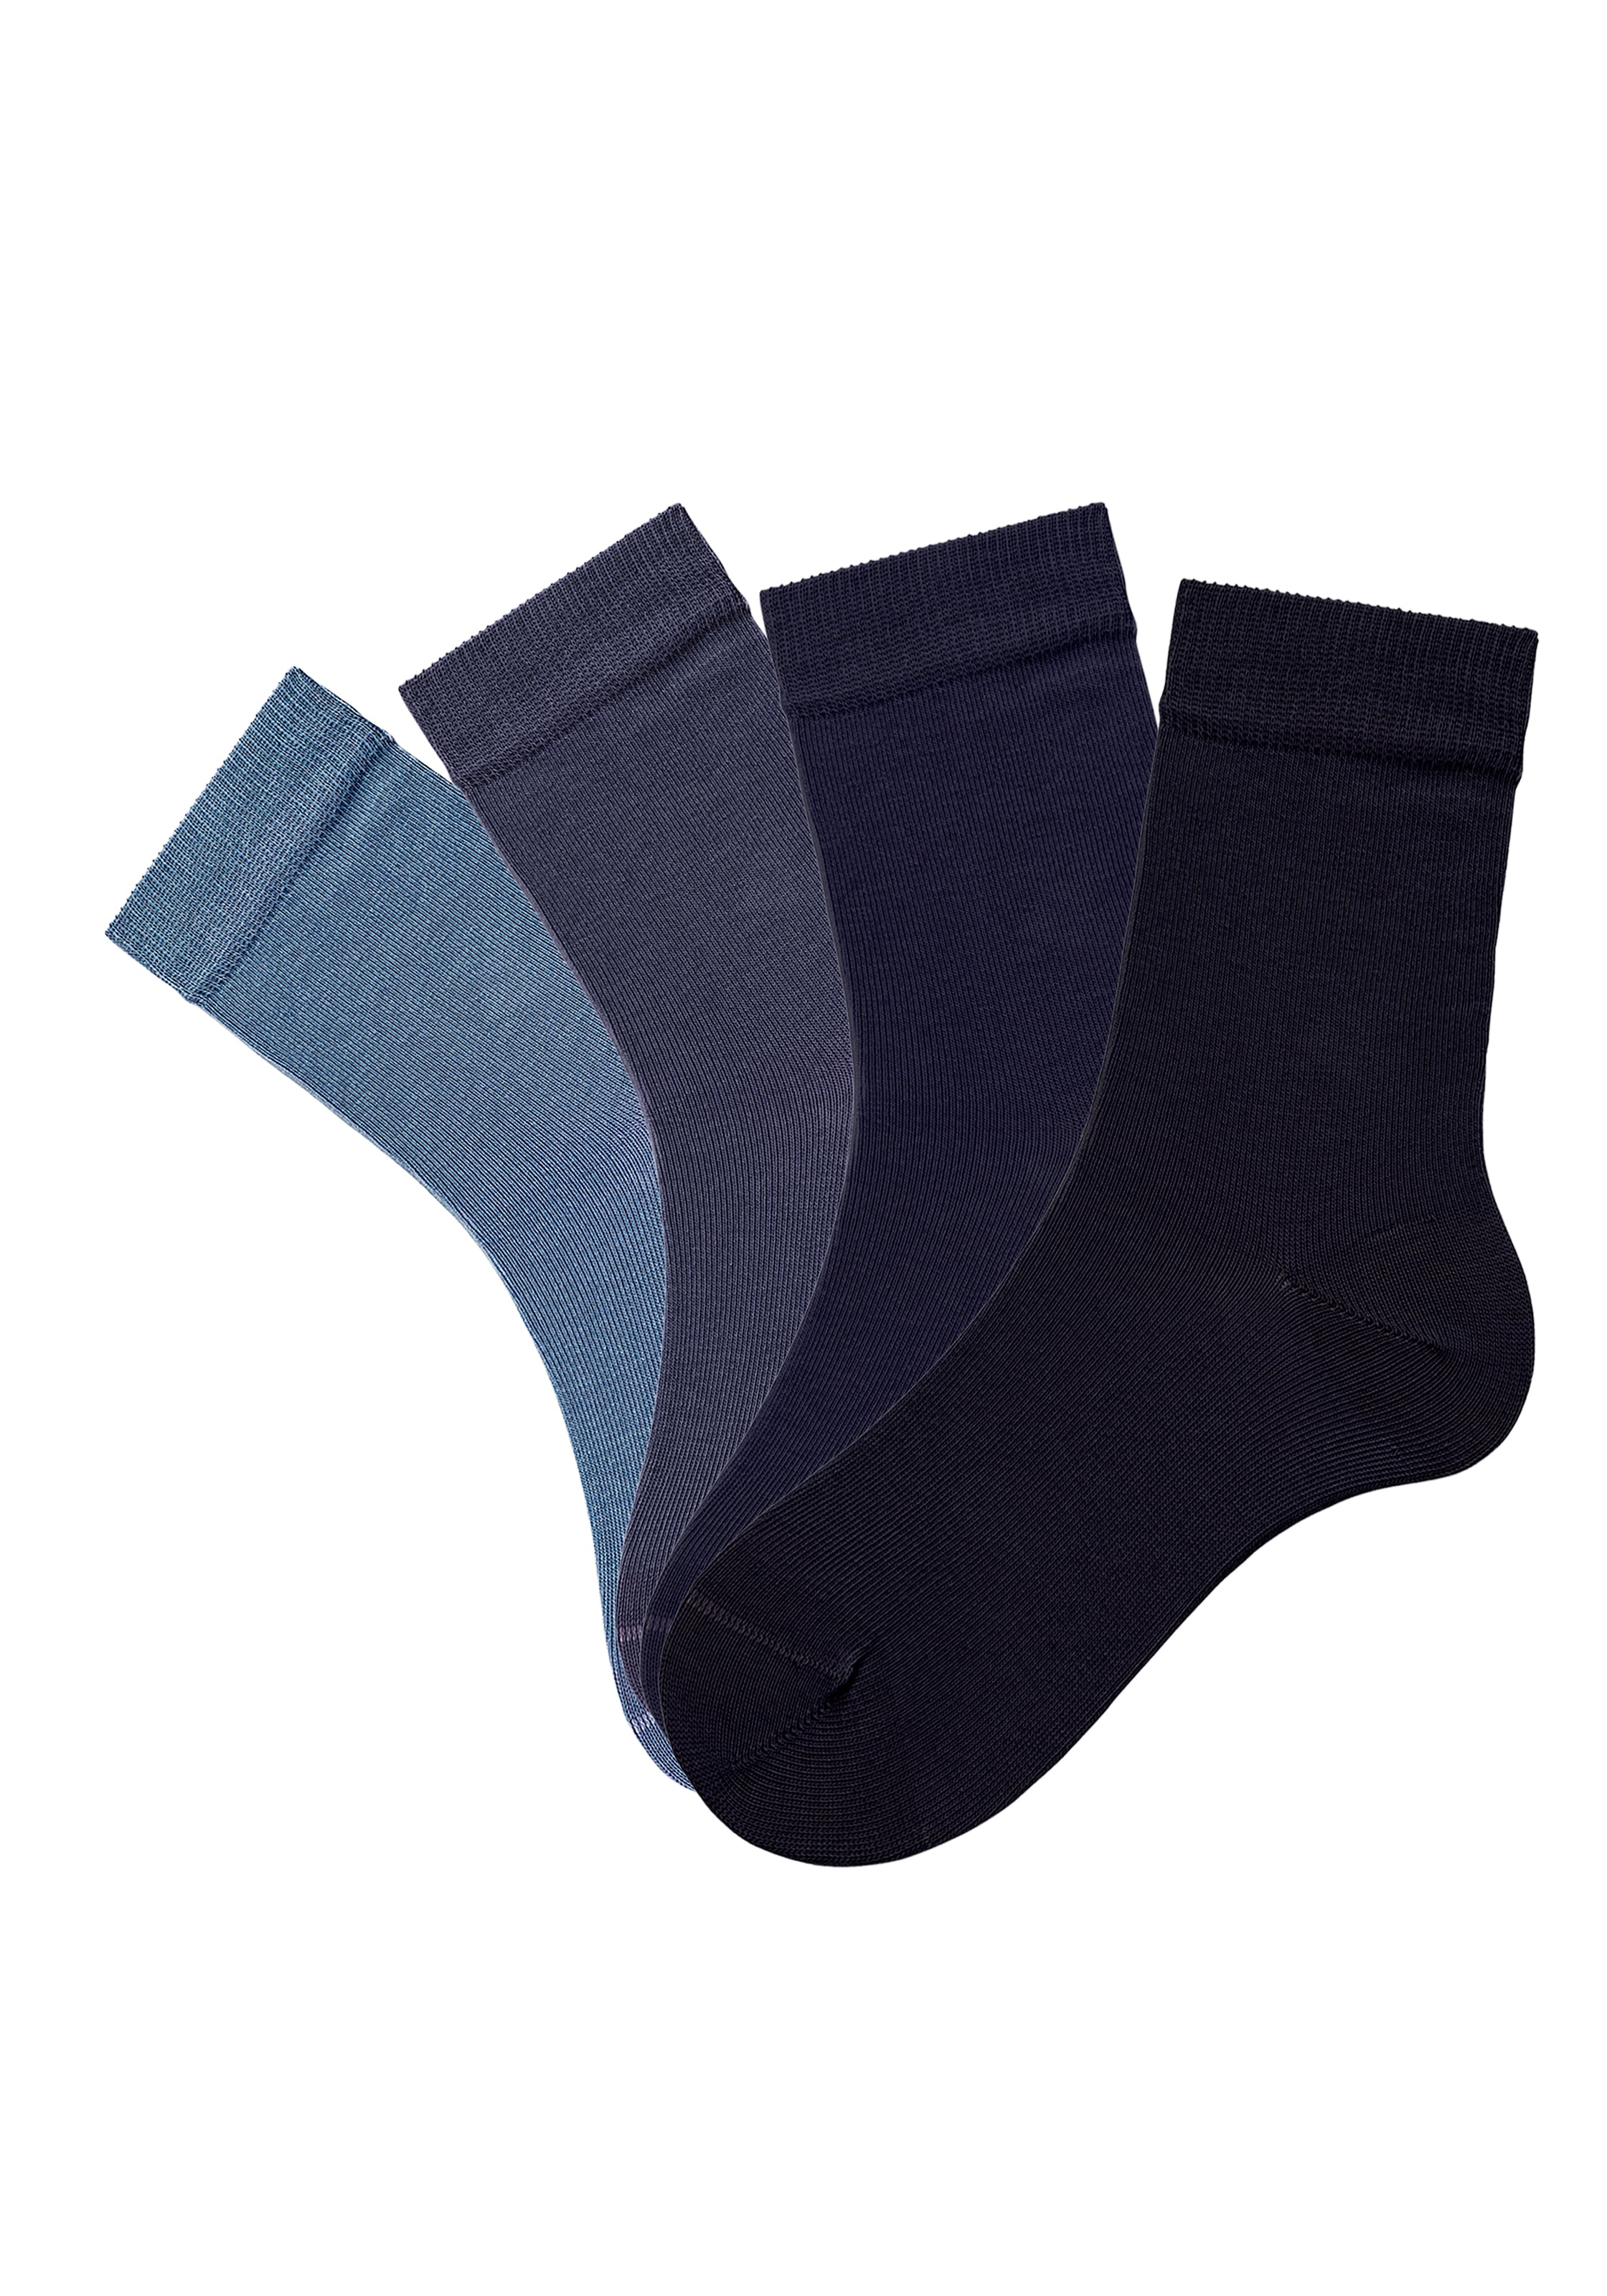 unterschiedlichen (4 in H.I.S Socken, bei ♕ Paar), Farbzusammenstellungen